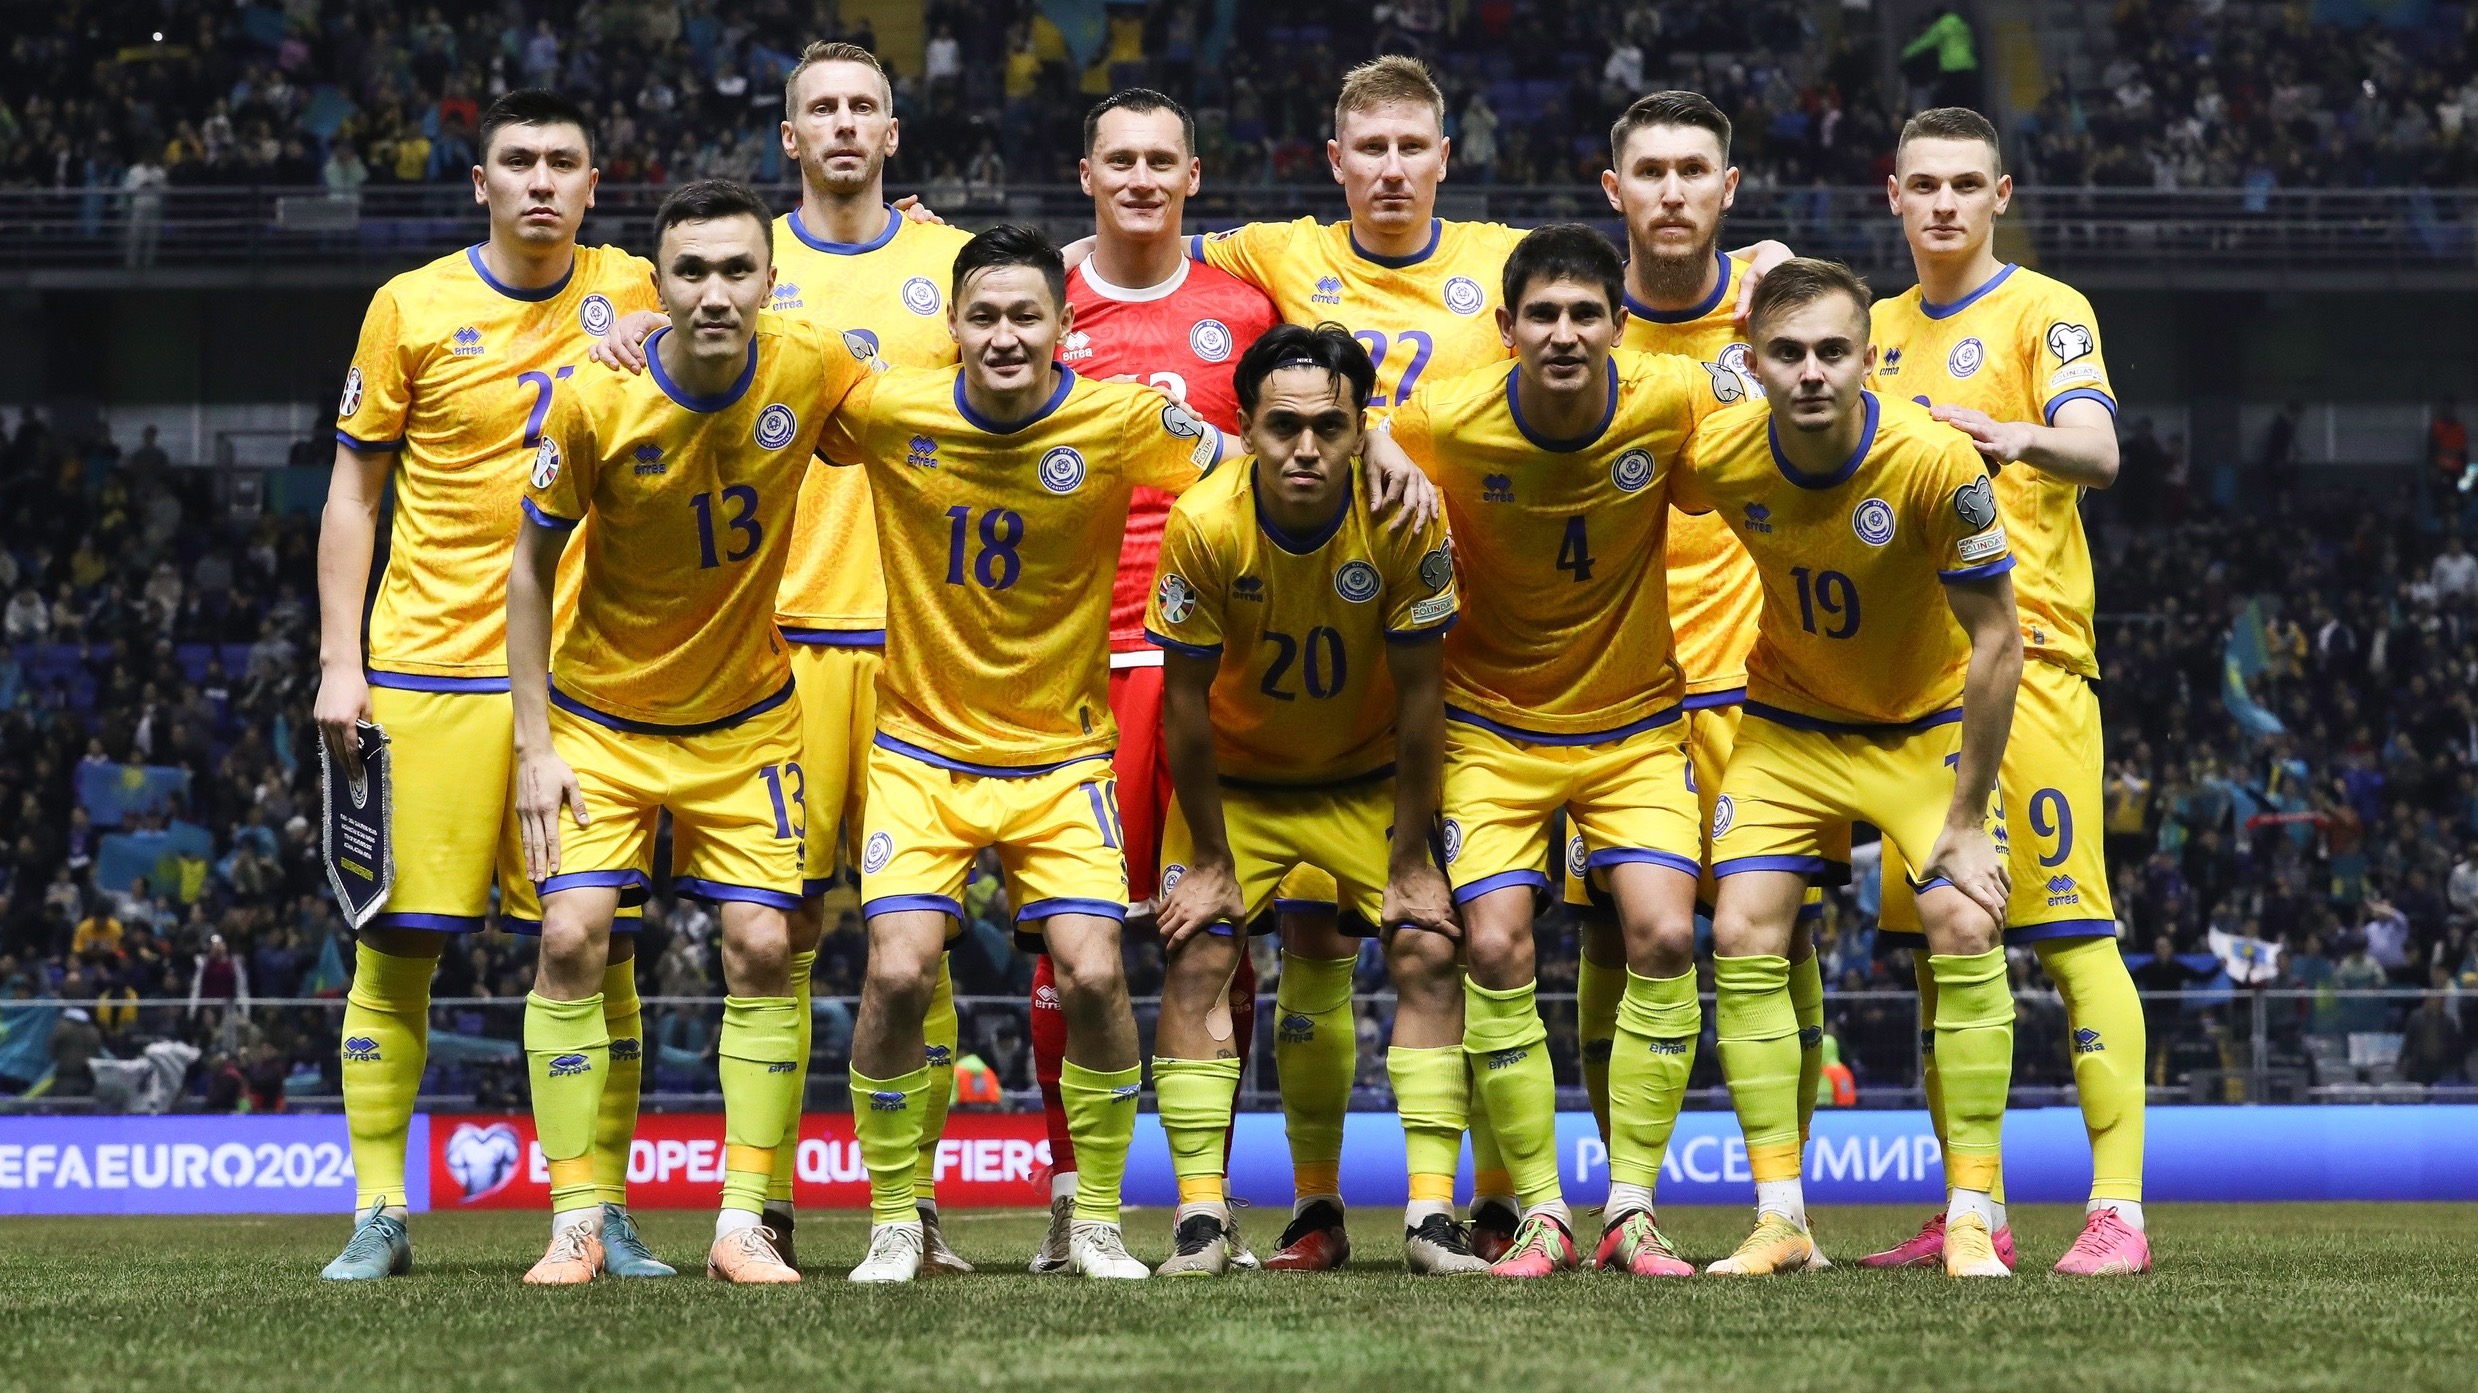 Министр спорта Маржикпаев обратился к футболистам сборной Казахстана перед матчем против Словении